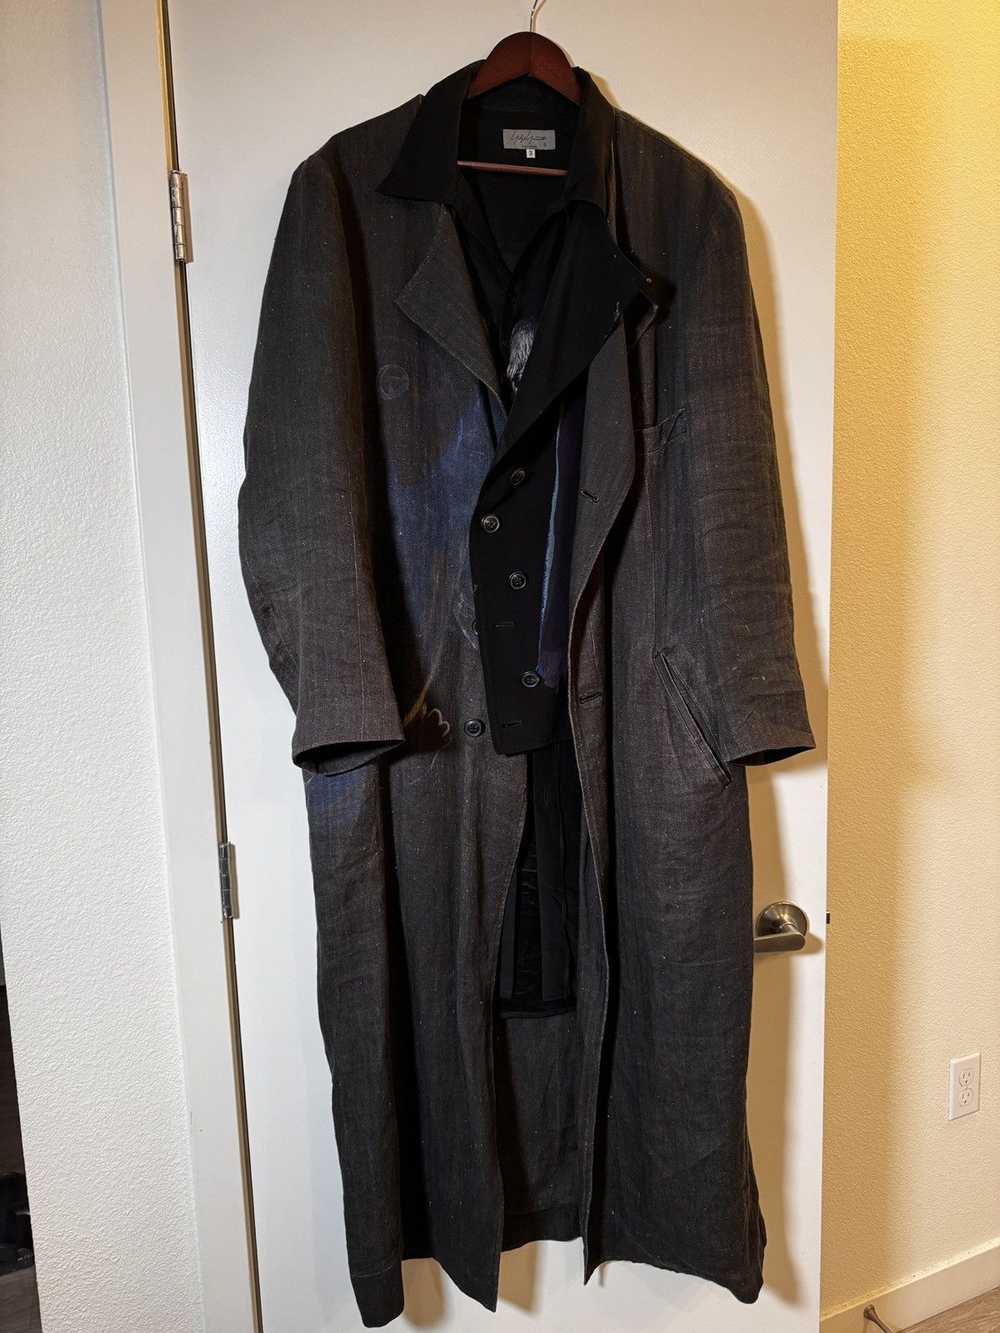 Yohji Yamamoto 20ss runway look1 long jacket - image 2